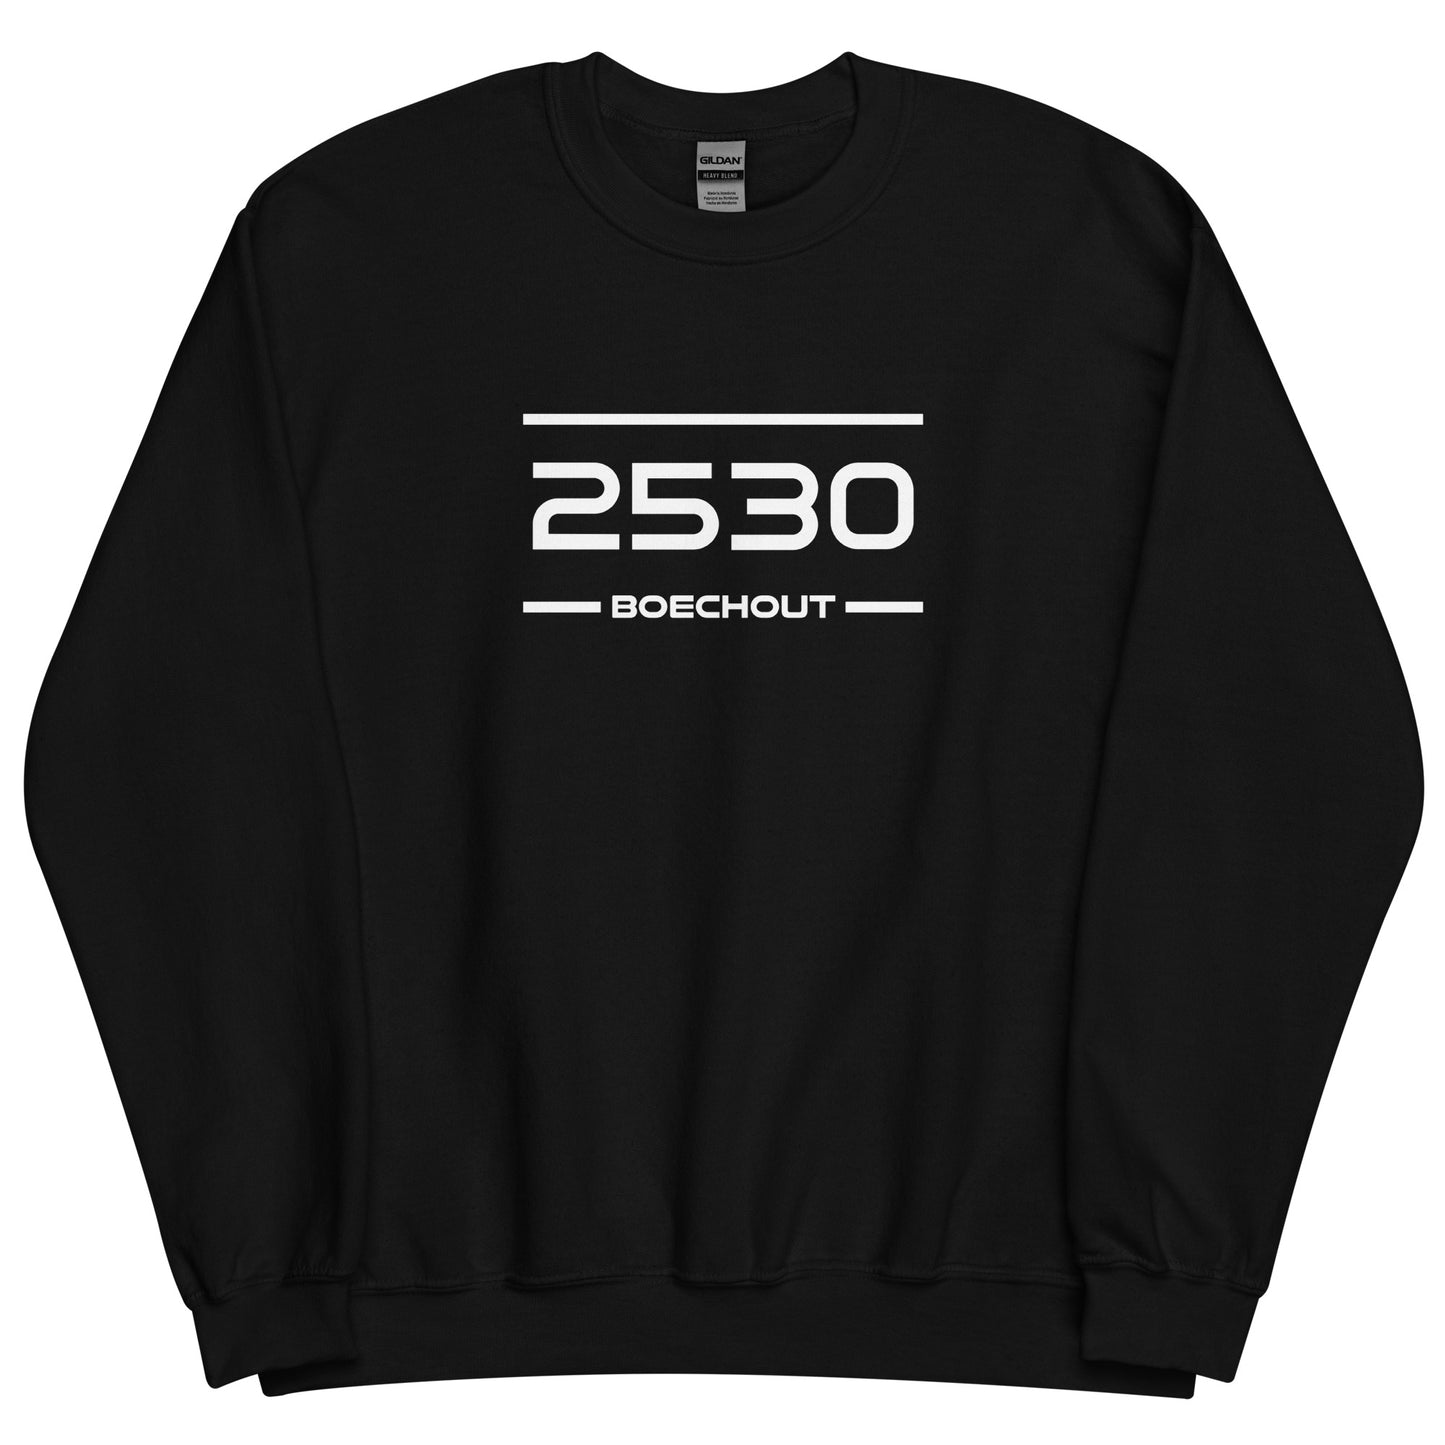 Sweater - 2530 - Boechout (M/V)